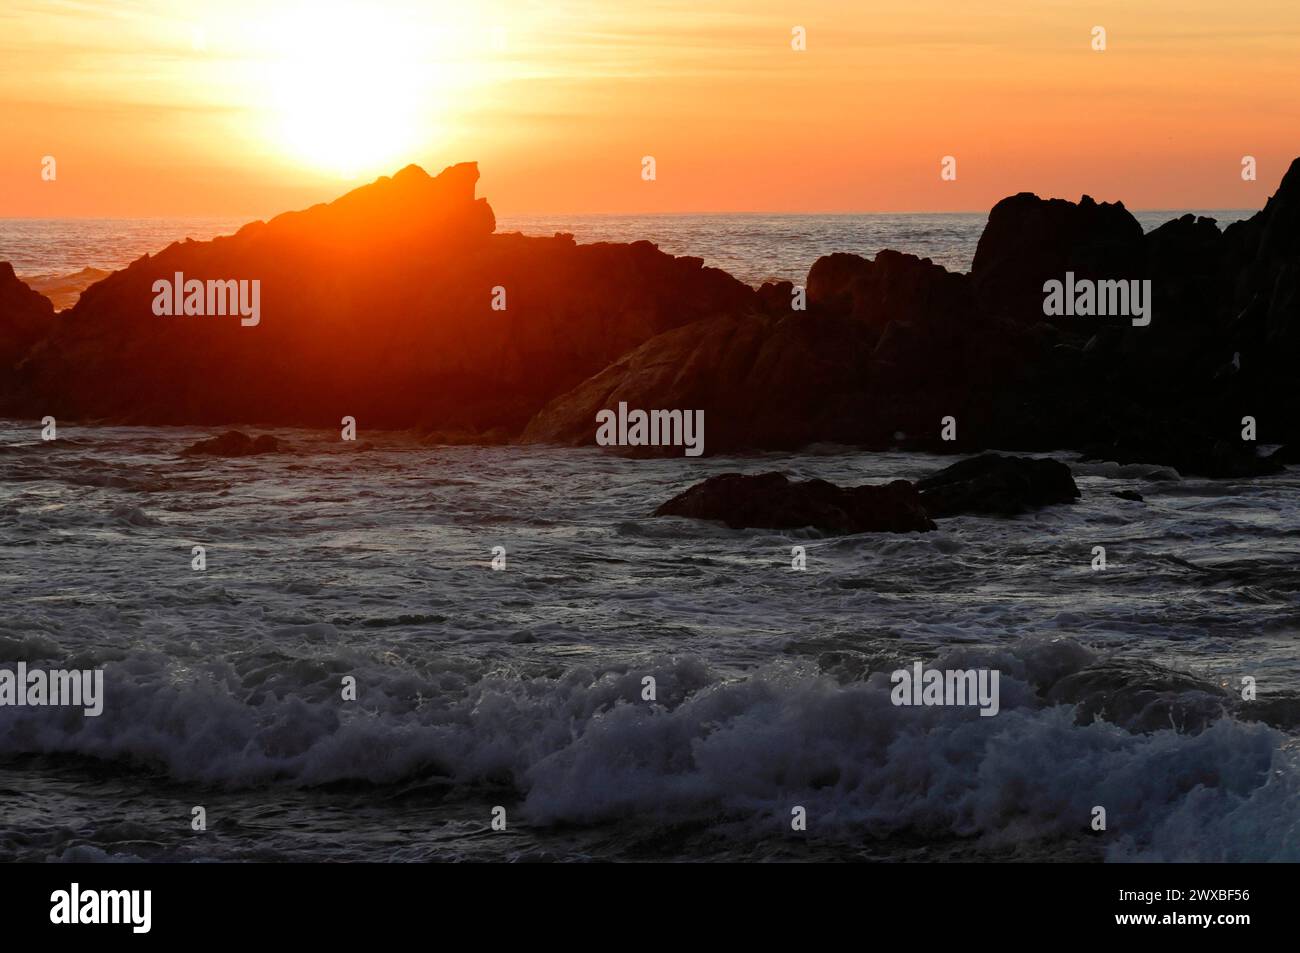 Die Silhouetten der Felsen stehen im Kontrast zu den Wellen des Meeres unter einem orangefarbenen Himmel bei Sonnenaufgang in der Nähe von Mindelo, Porto, Nordportugal, Portugal Stockfoto